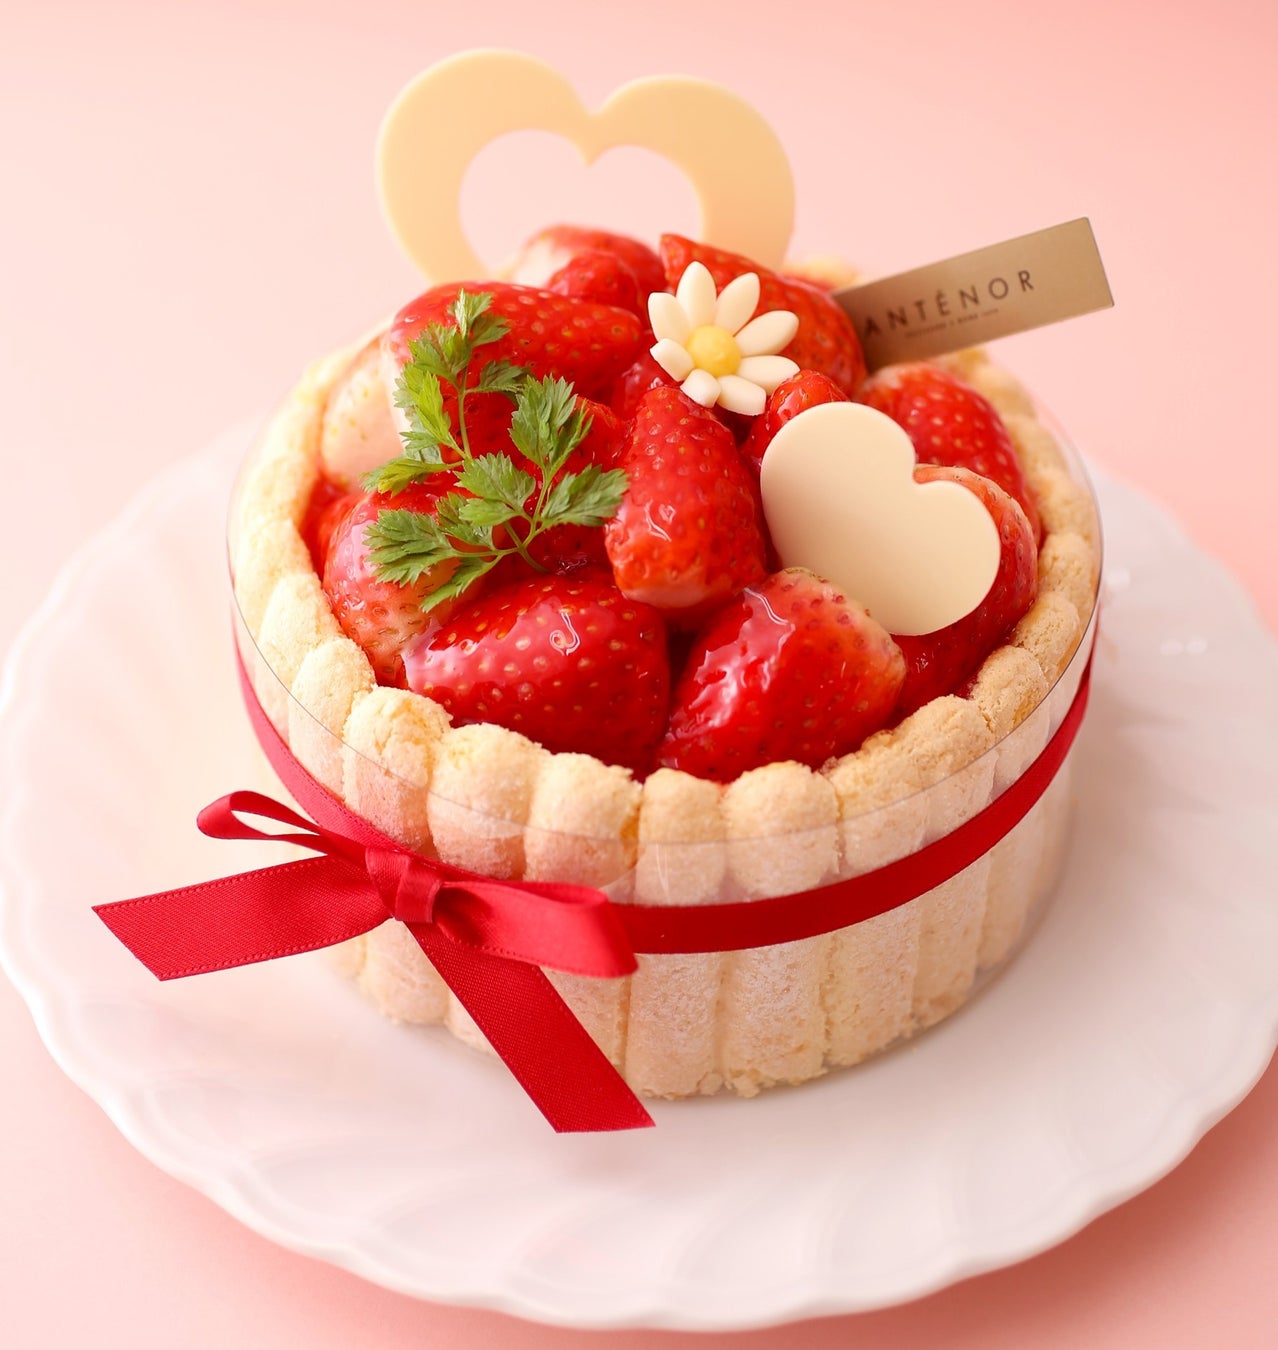 【アンテノール ホワイトデー】花束のようなケーキや華やかな苺のギフトを贈って。大切な方に幸せを届けるホワイトデー。